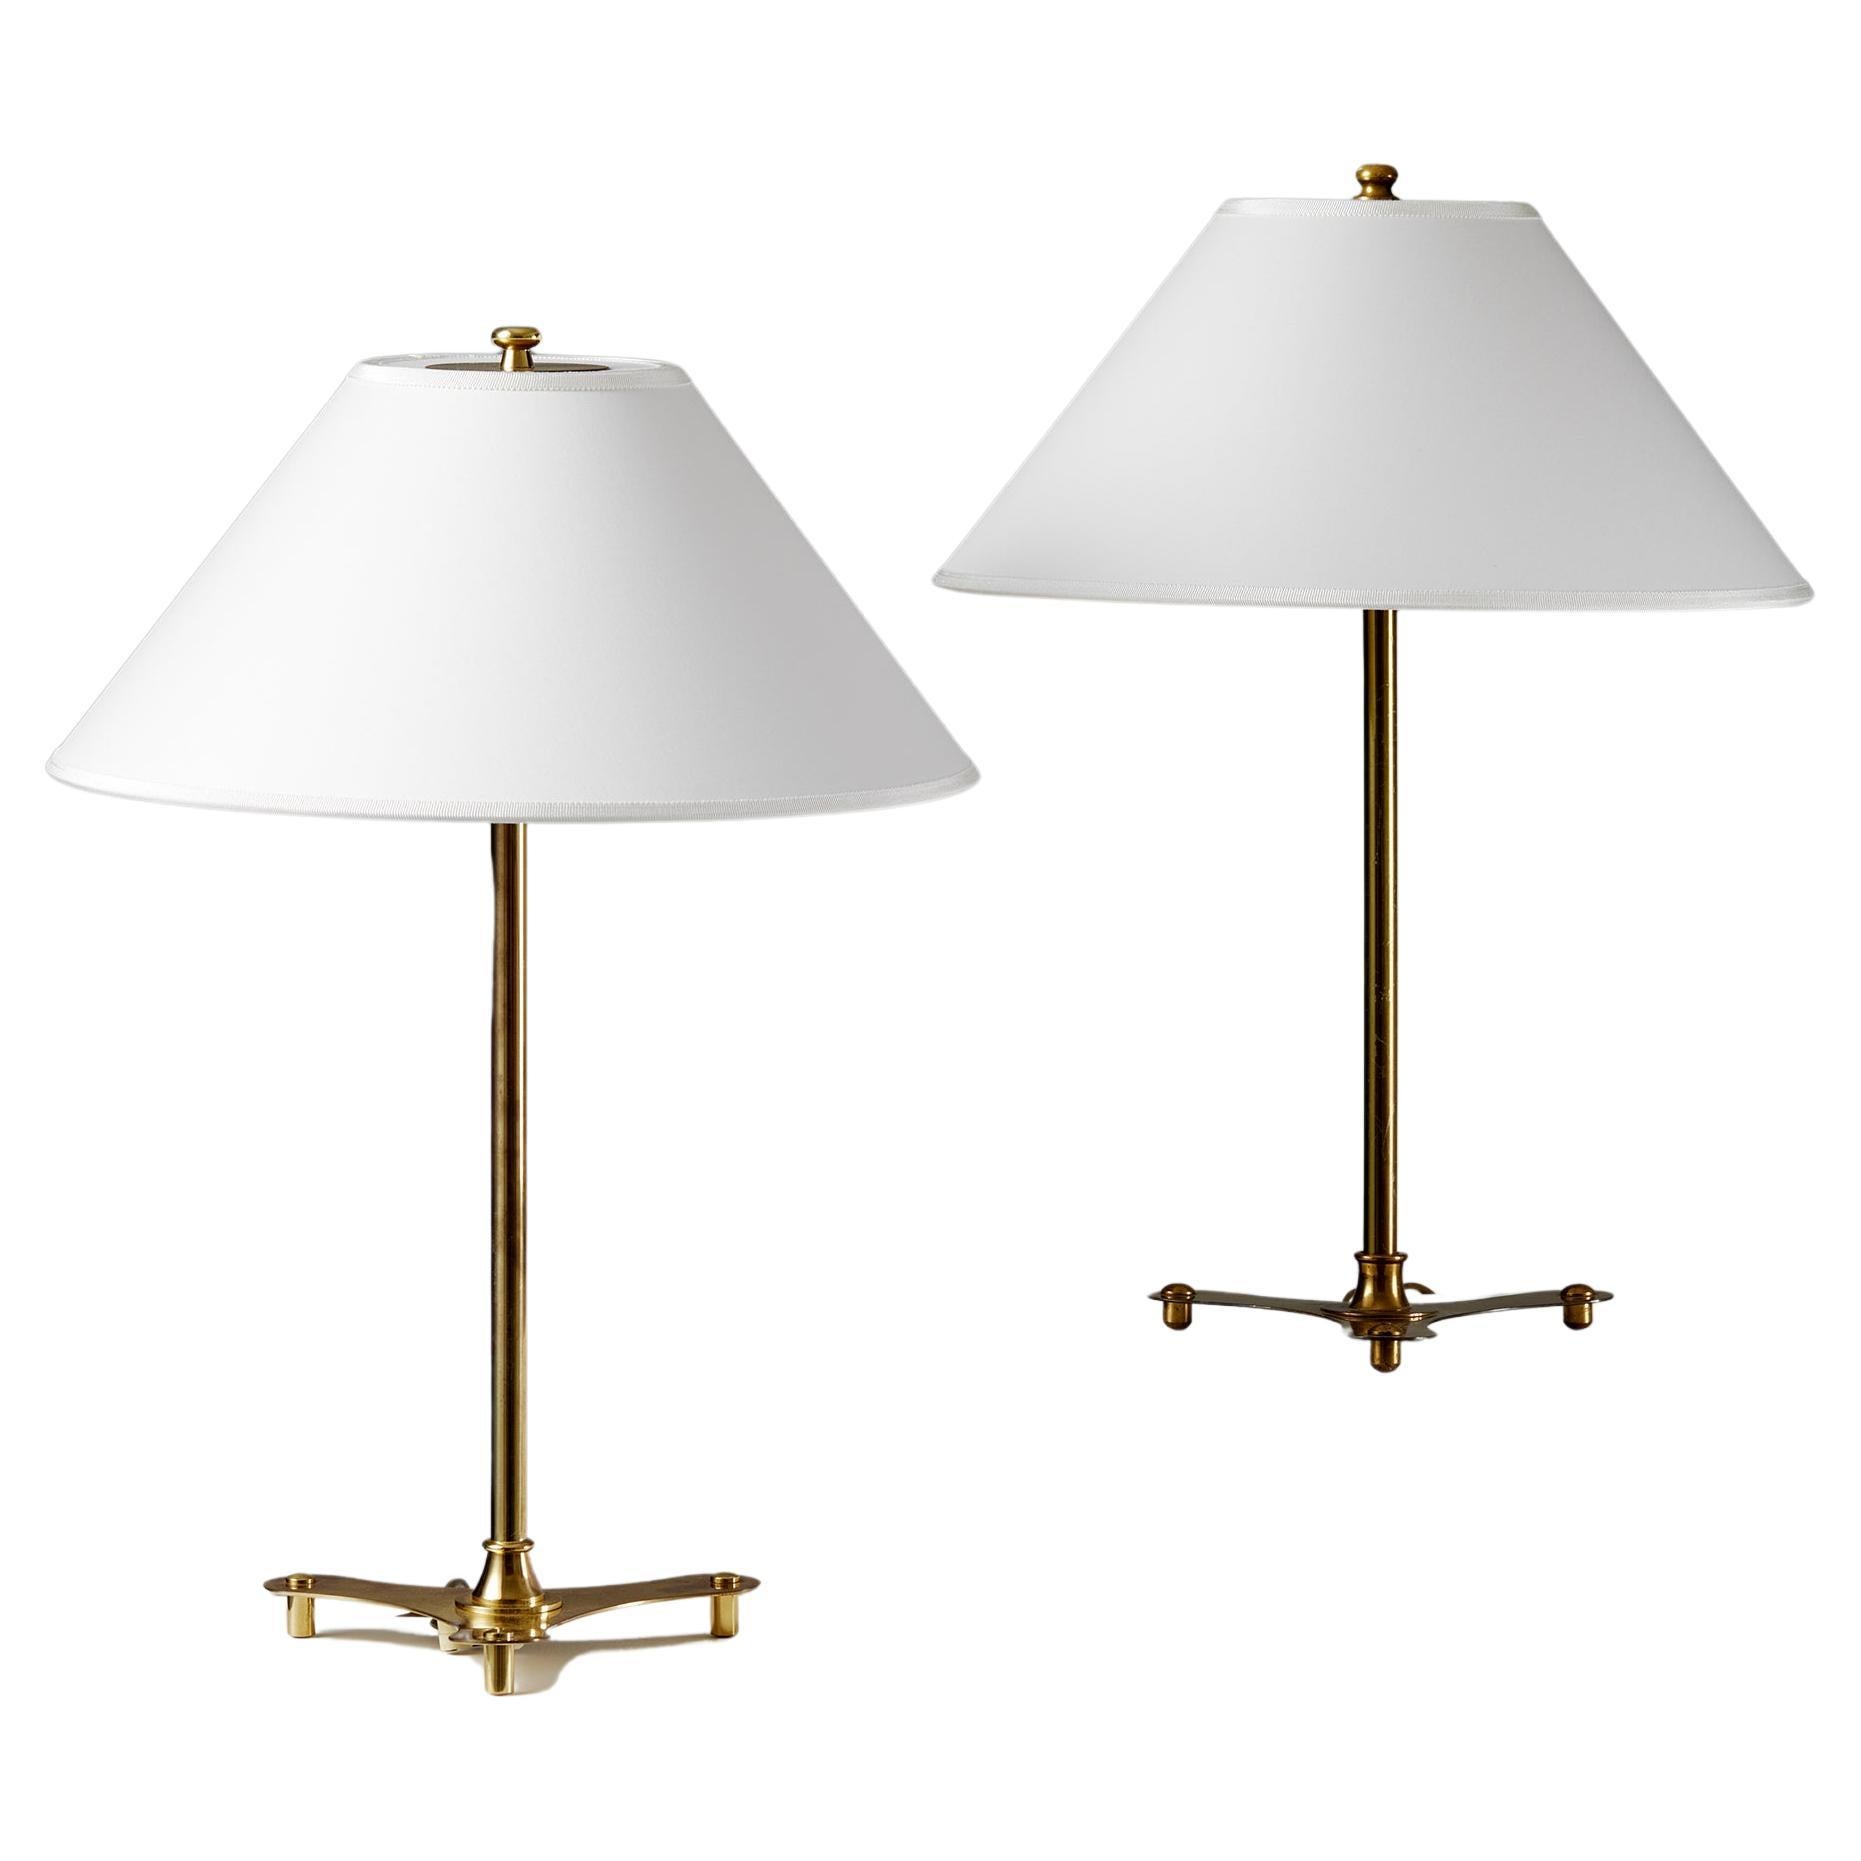 Pair of table lamps model 2552 designed by Josef Frank for Svenskt Tenn, 1950s For Sale